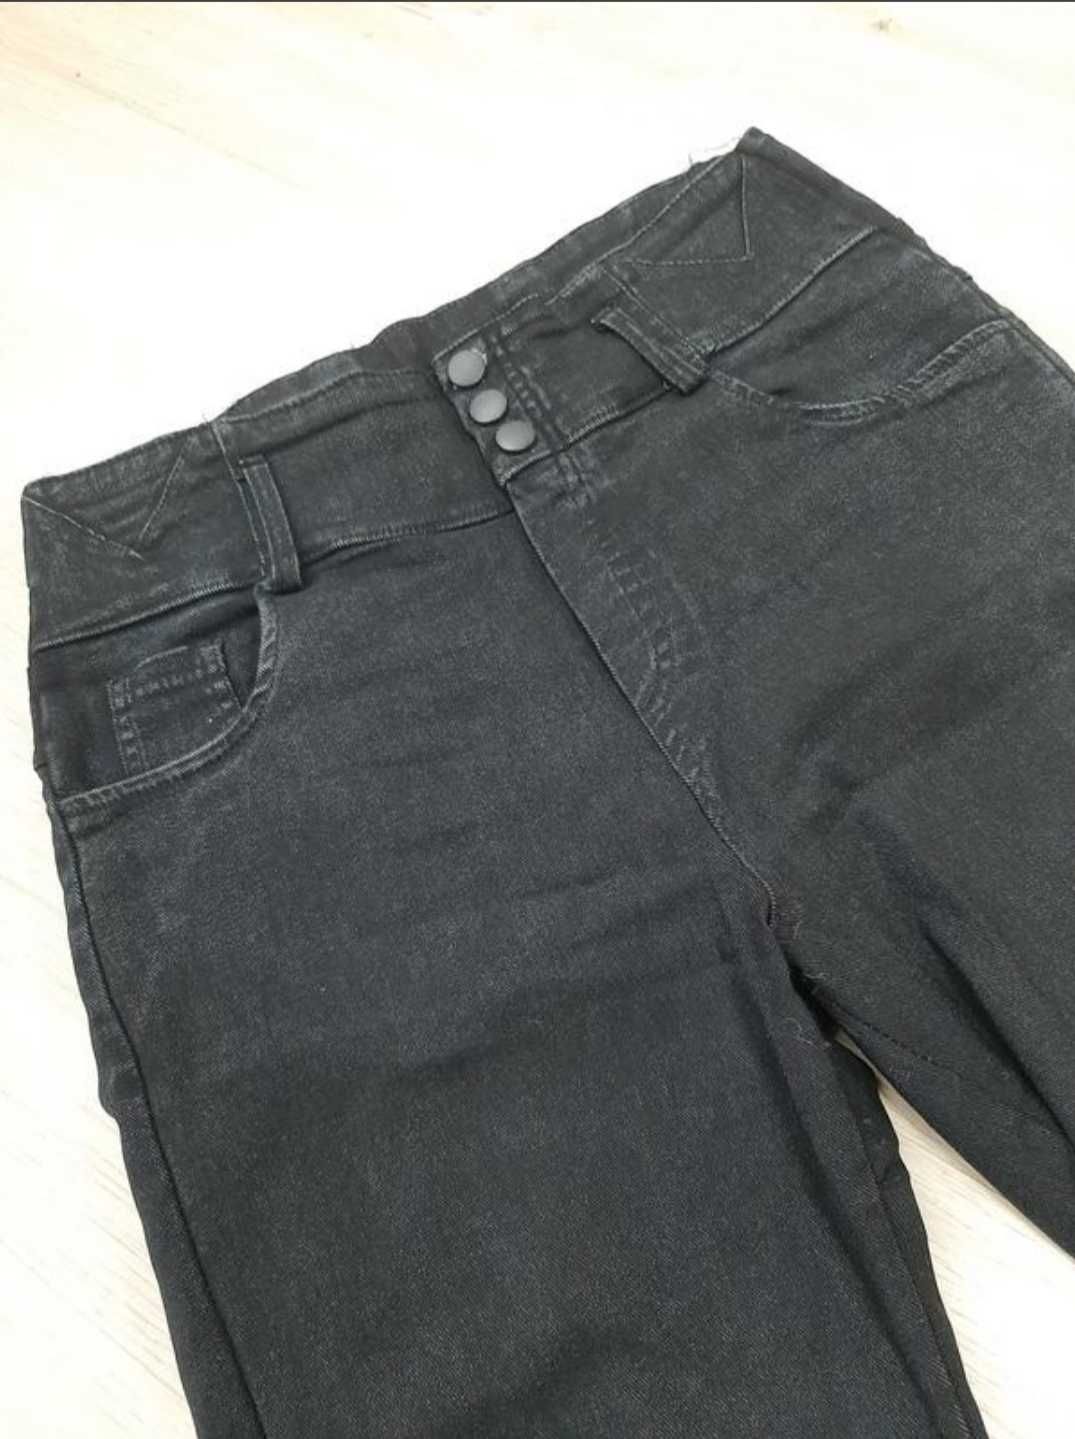 Высокие джинсы, джеггинсы серые, черные, штаны, брюки